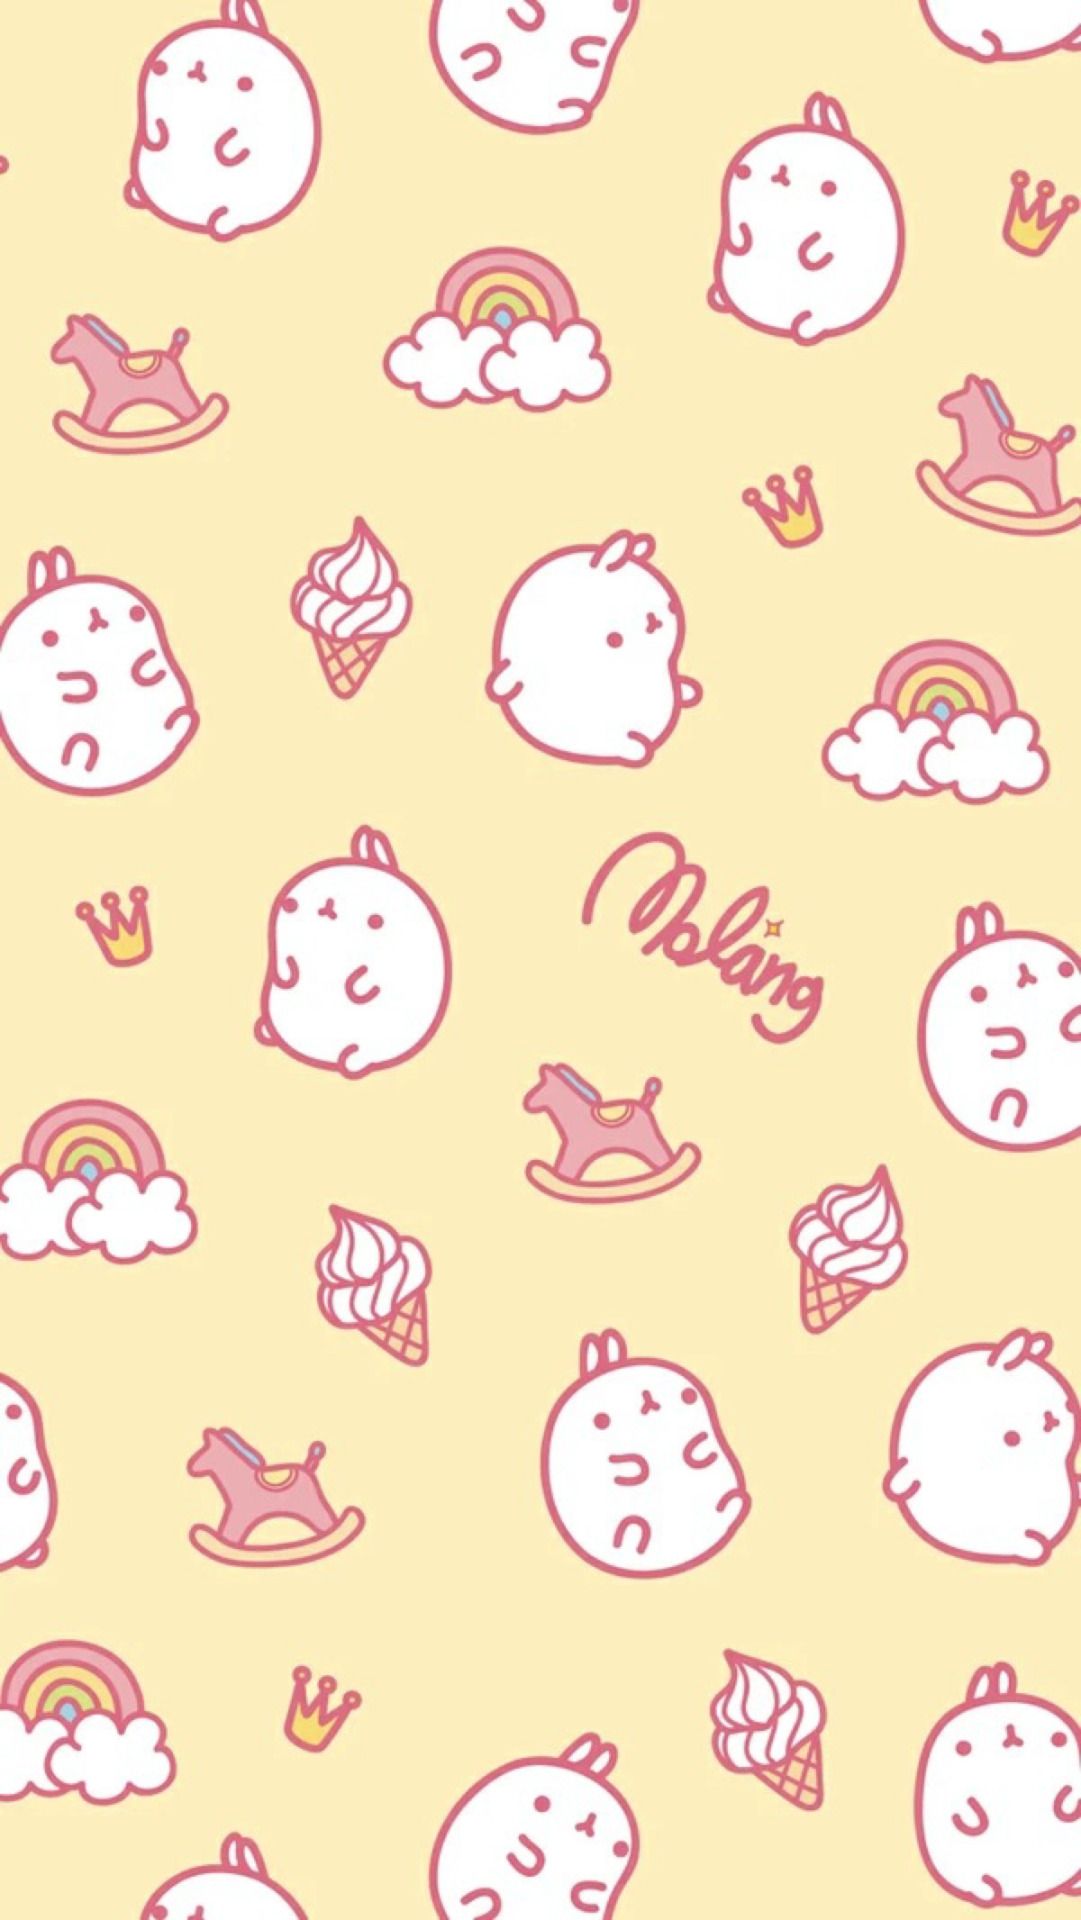 ◕ ε ◕ ”. Molang wallpaper, Cute anime wallpaper, Cute pastel wallpaper